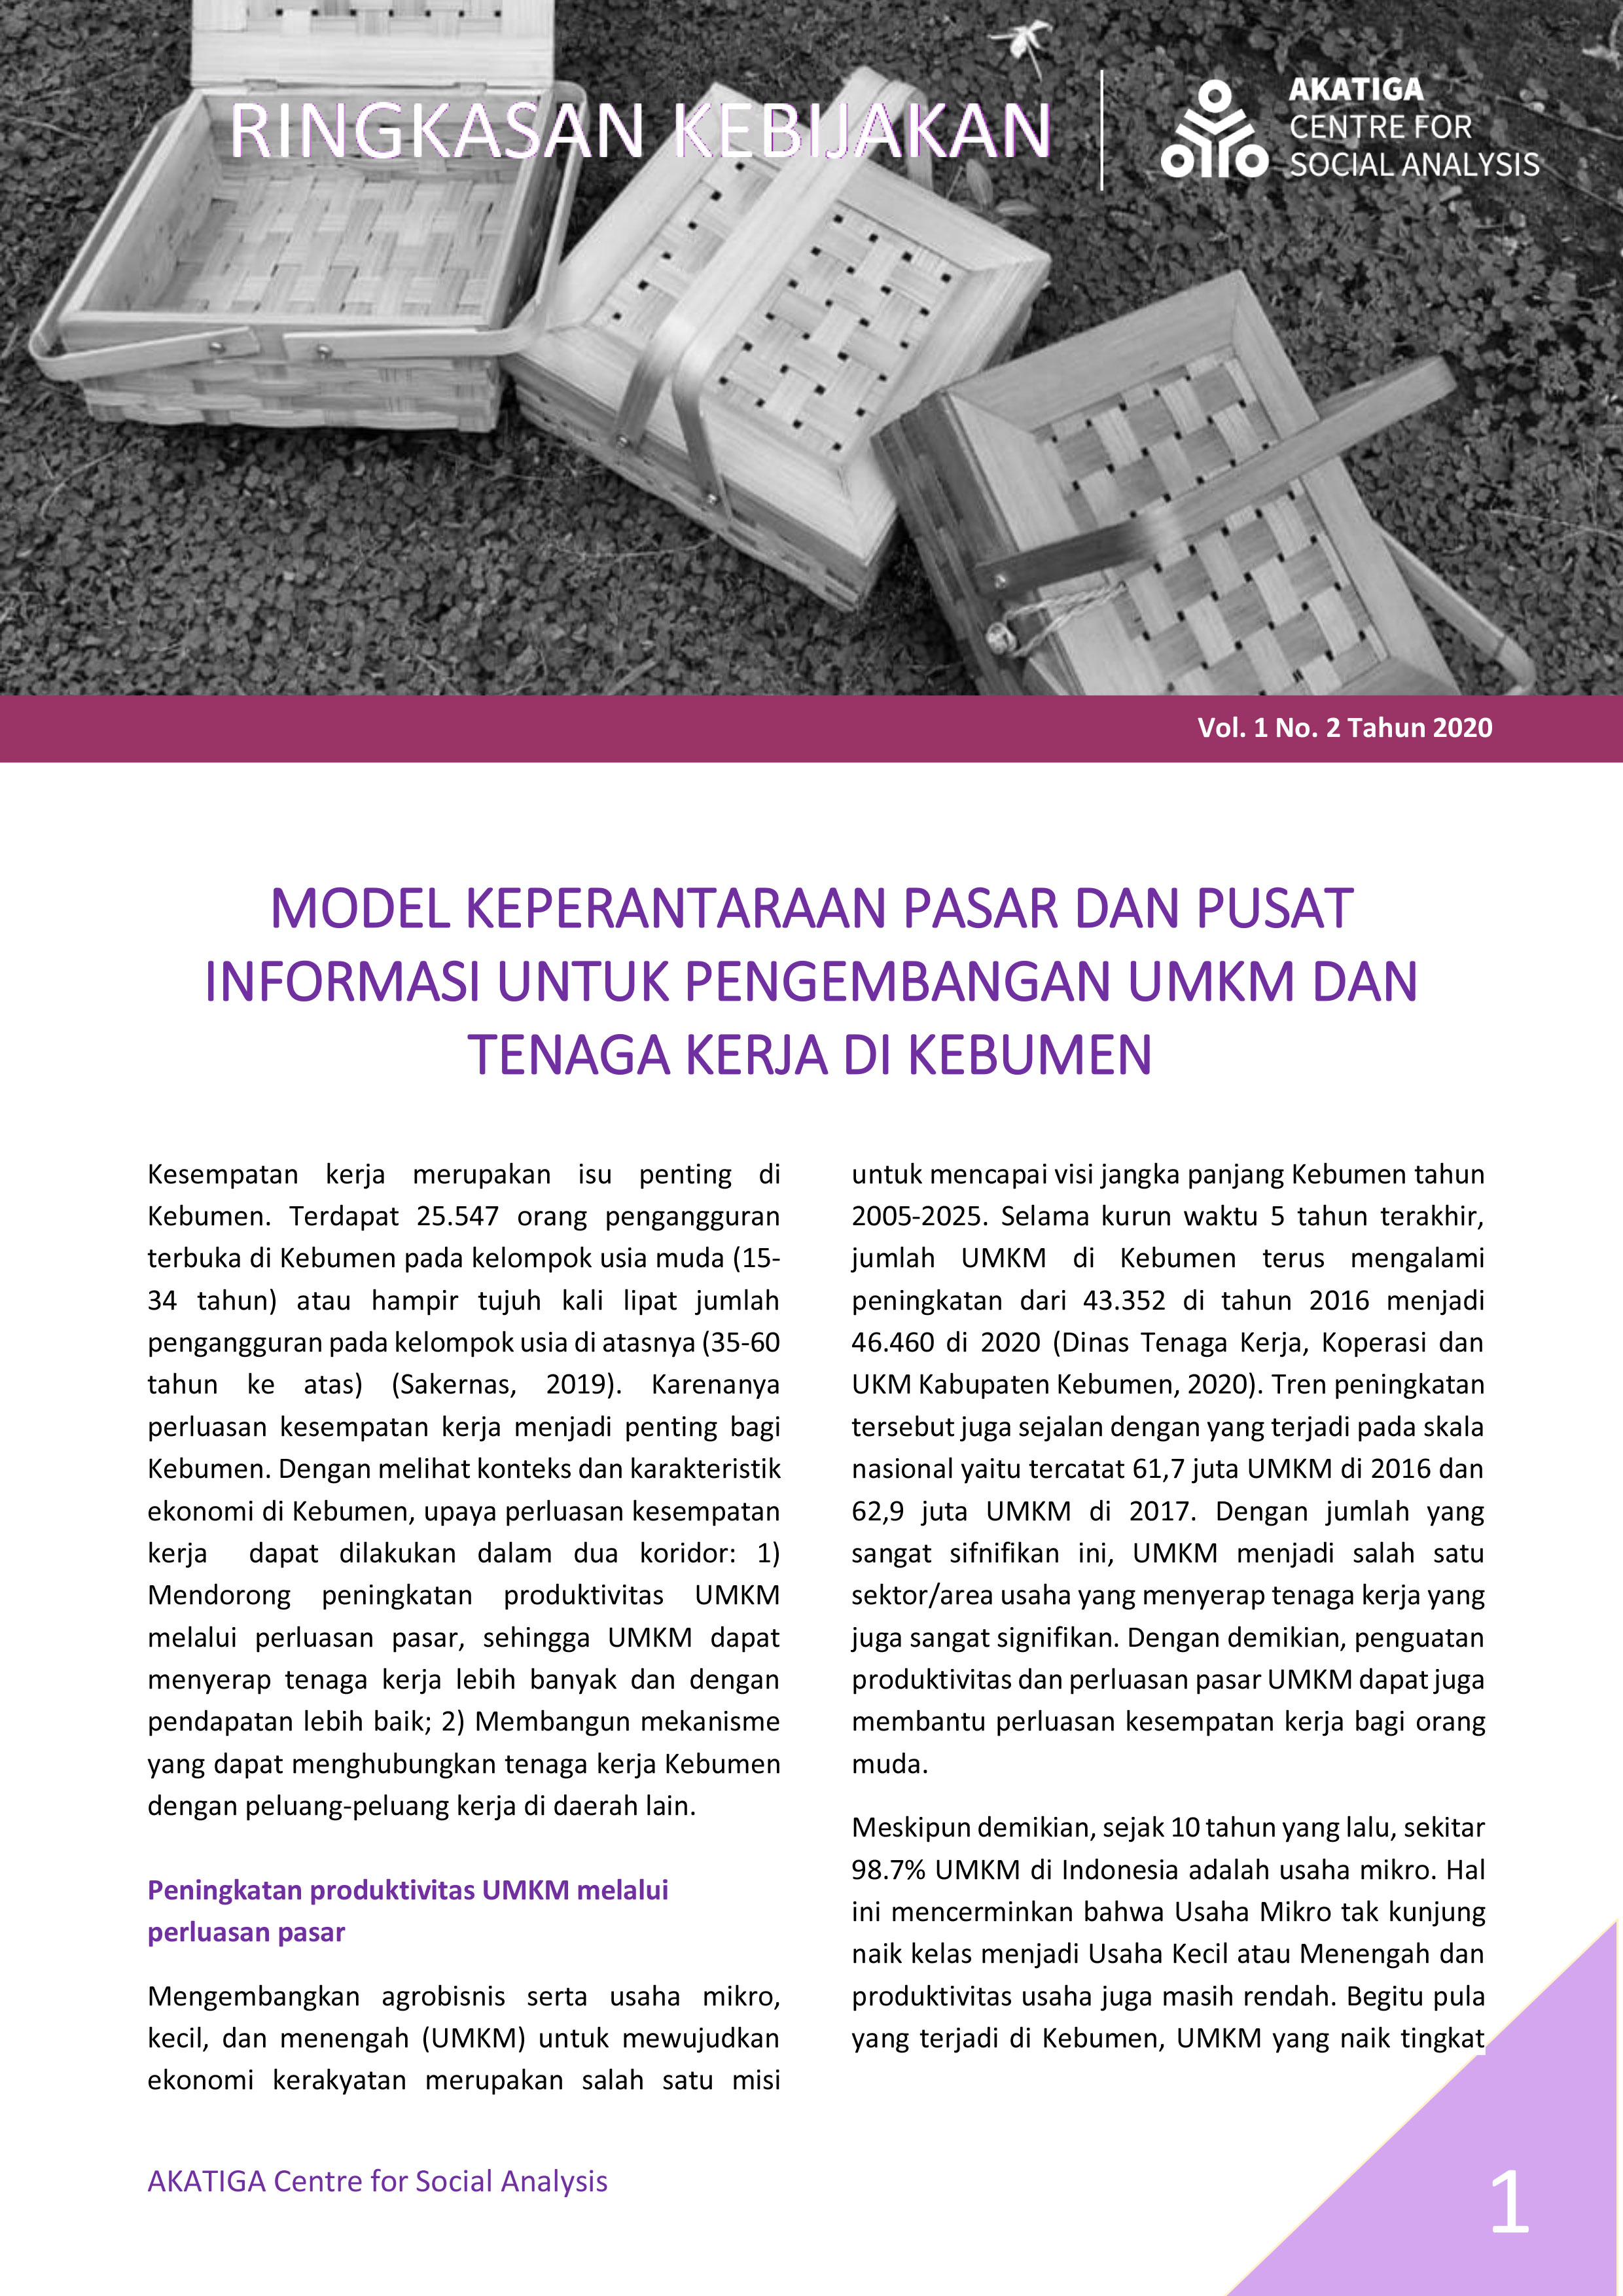 Policy Brief: Model Keperantaraan Pasar dan Pusat Informasi Untuk Pengembangan UMKM danTenaga Kerja Di Kebumen 